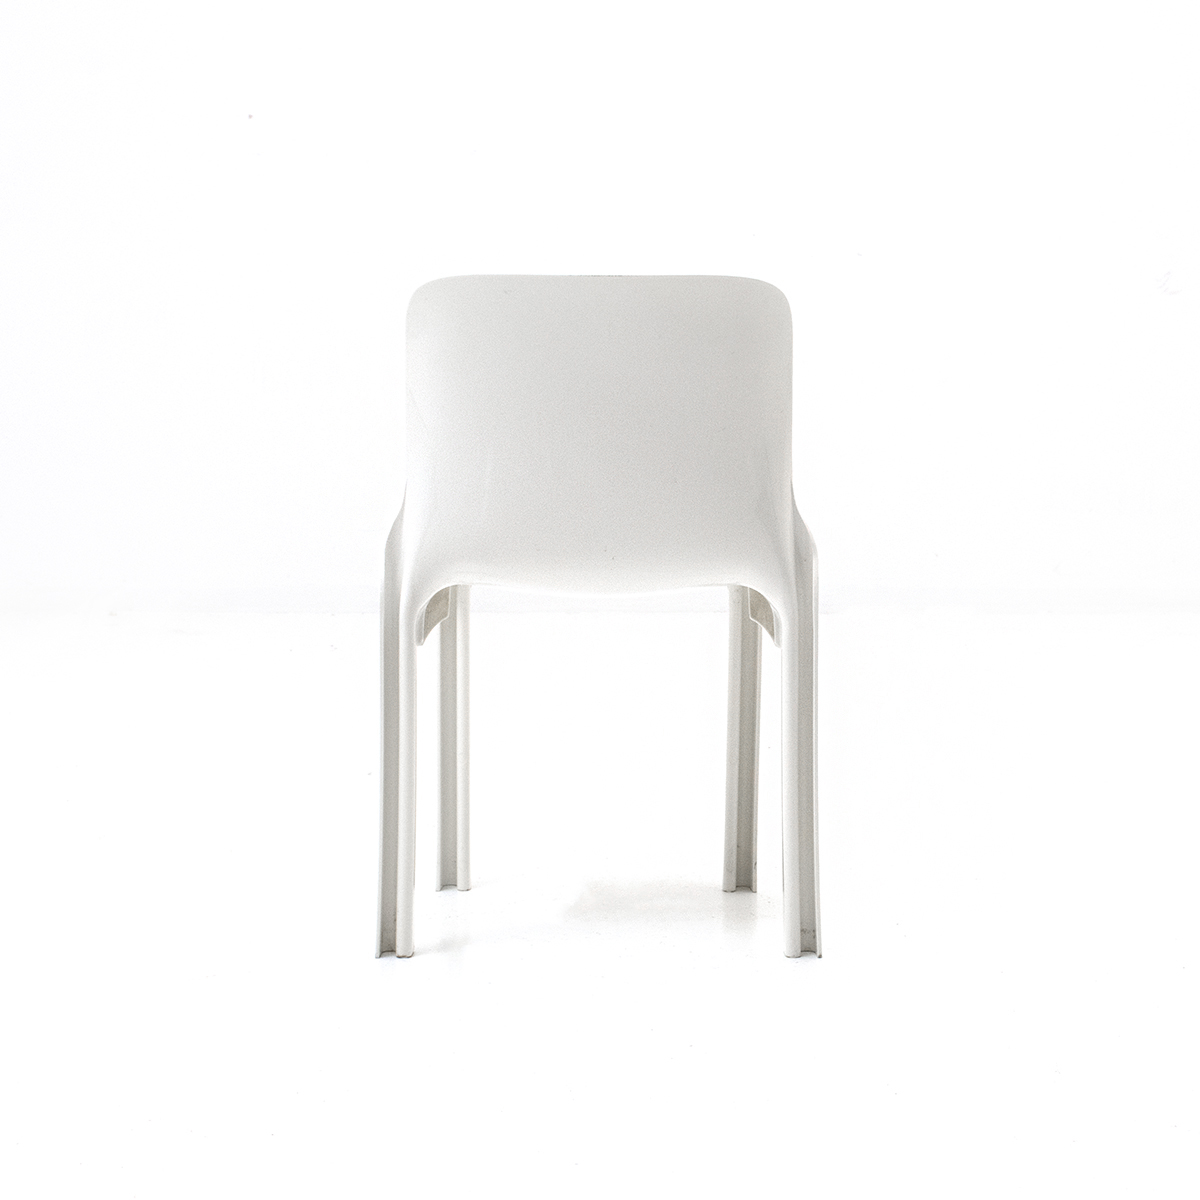 4-er Set Selene Chair, Vico Magistretti - 1